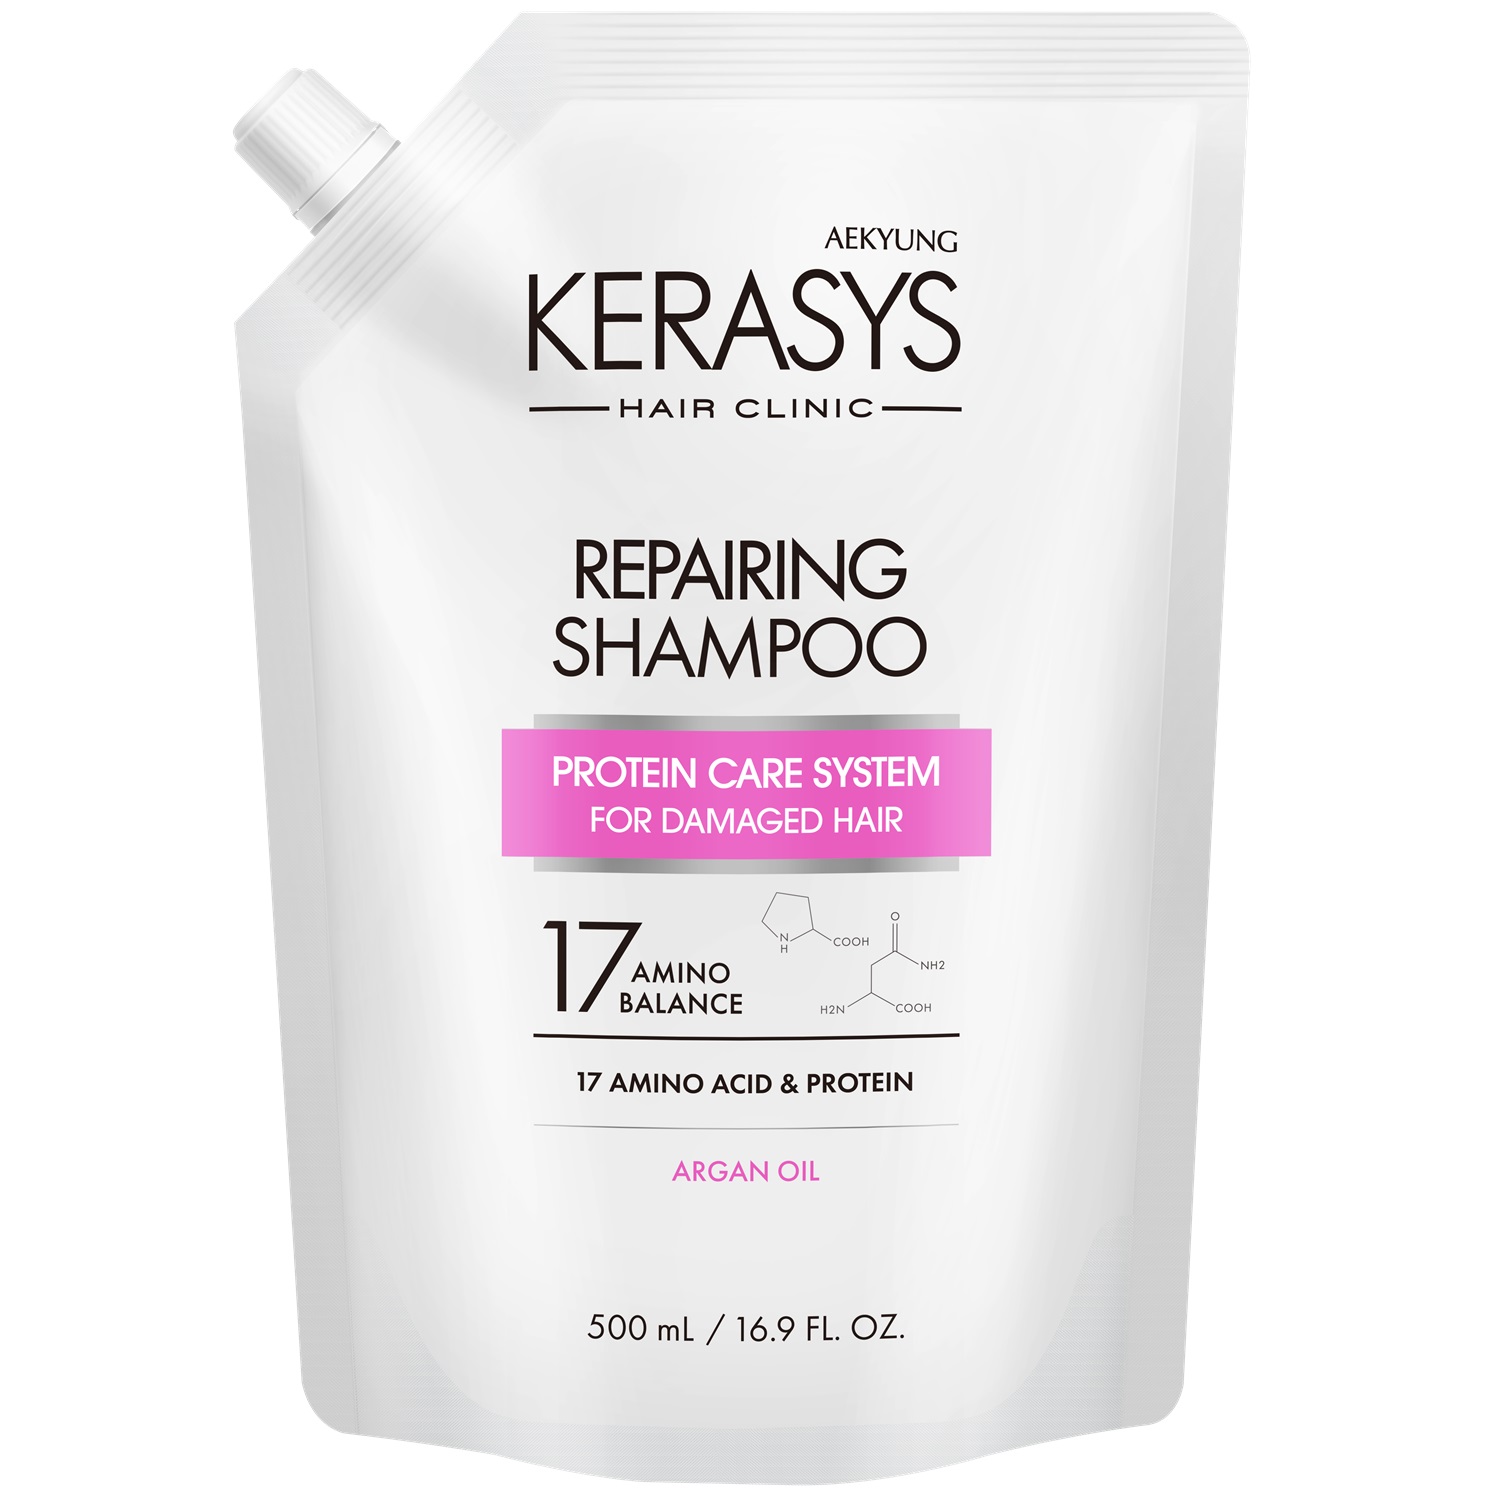 Kerasys Шампунь для волос восстанавливающий, запасной блок 500 мл (Kerasys, Hair Clinic) шампунь для волос kerasys восстанавливающий для поврежденных волос запасной блок 500 мл